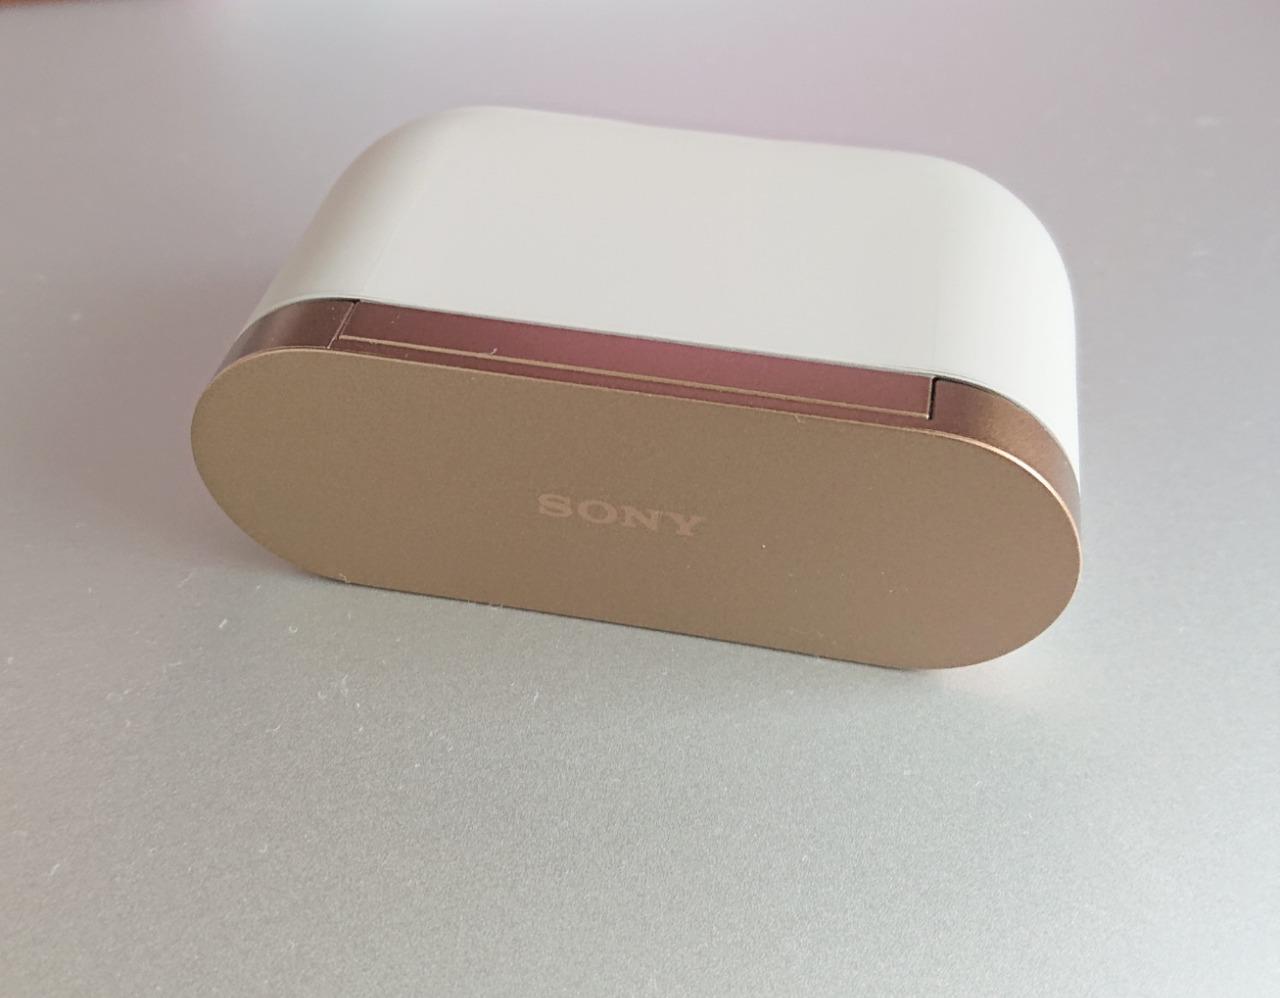 索尼Sony WF-1000XM3 真無線降噪耳機銀色WF-1000XM3/SME 香港行貨- 真無線藍牙耳機- 休閑娛樂- 電子產品- 友和YOHO  - 網購電器及電子產品